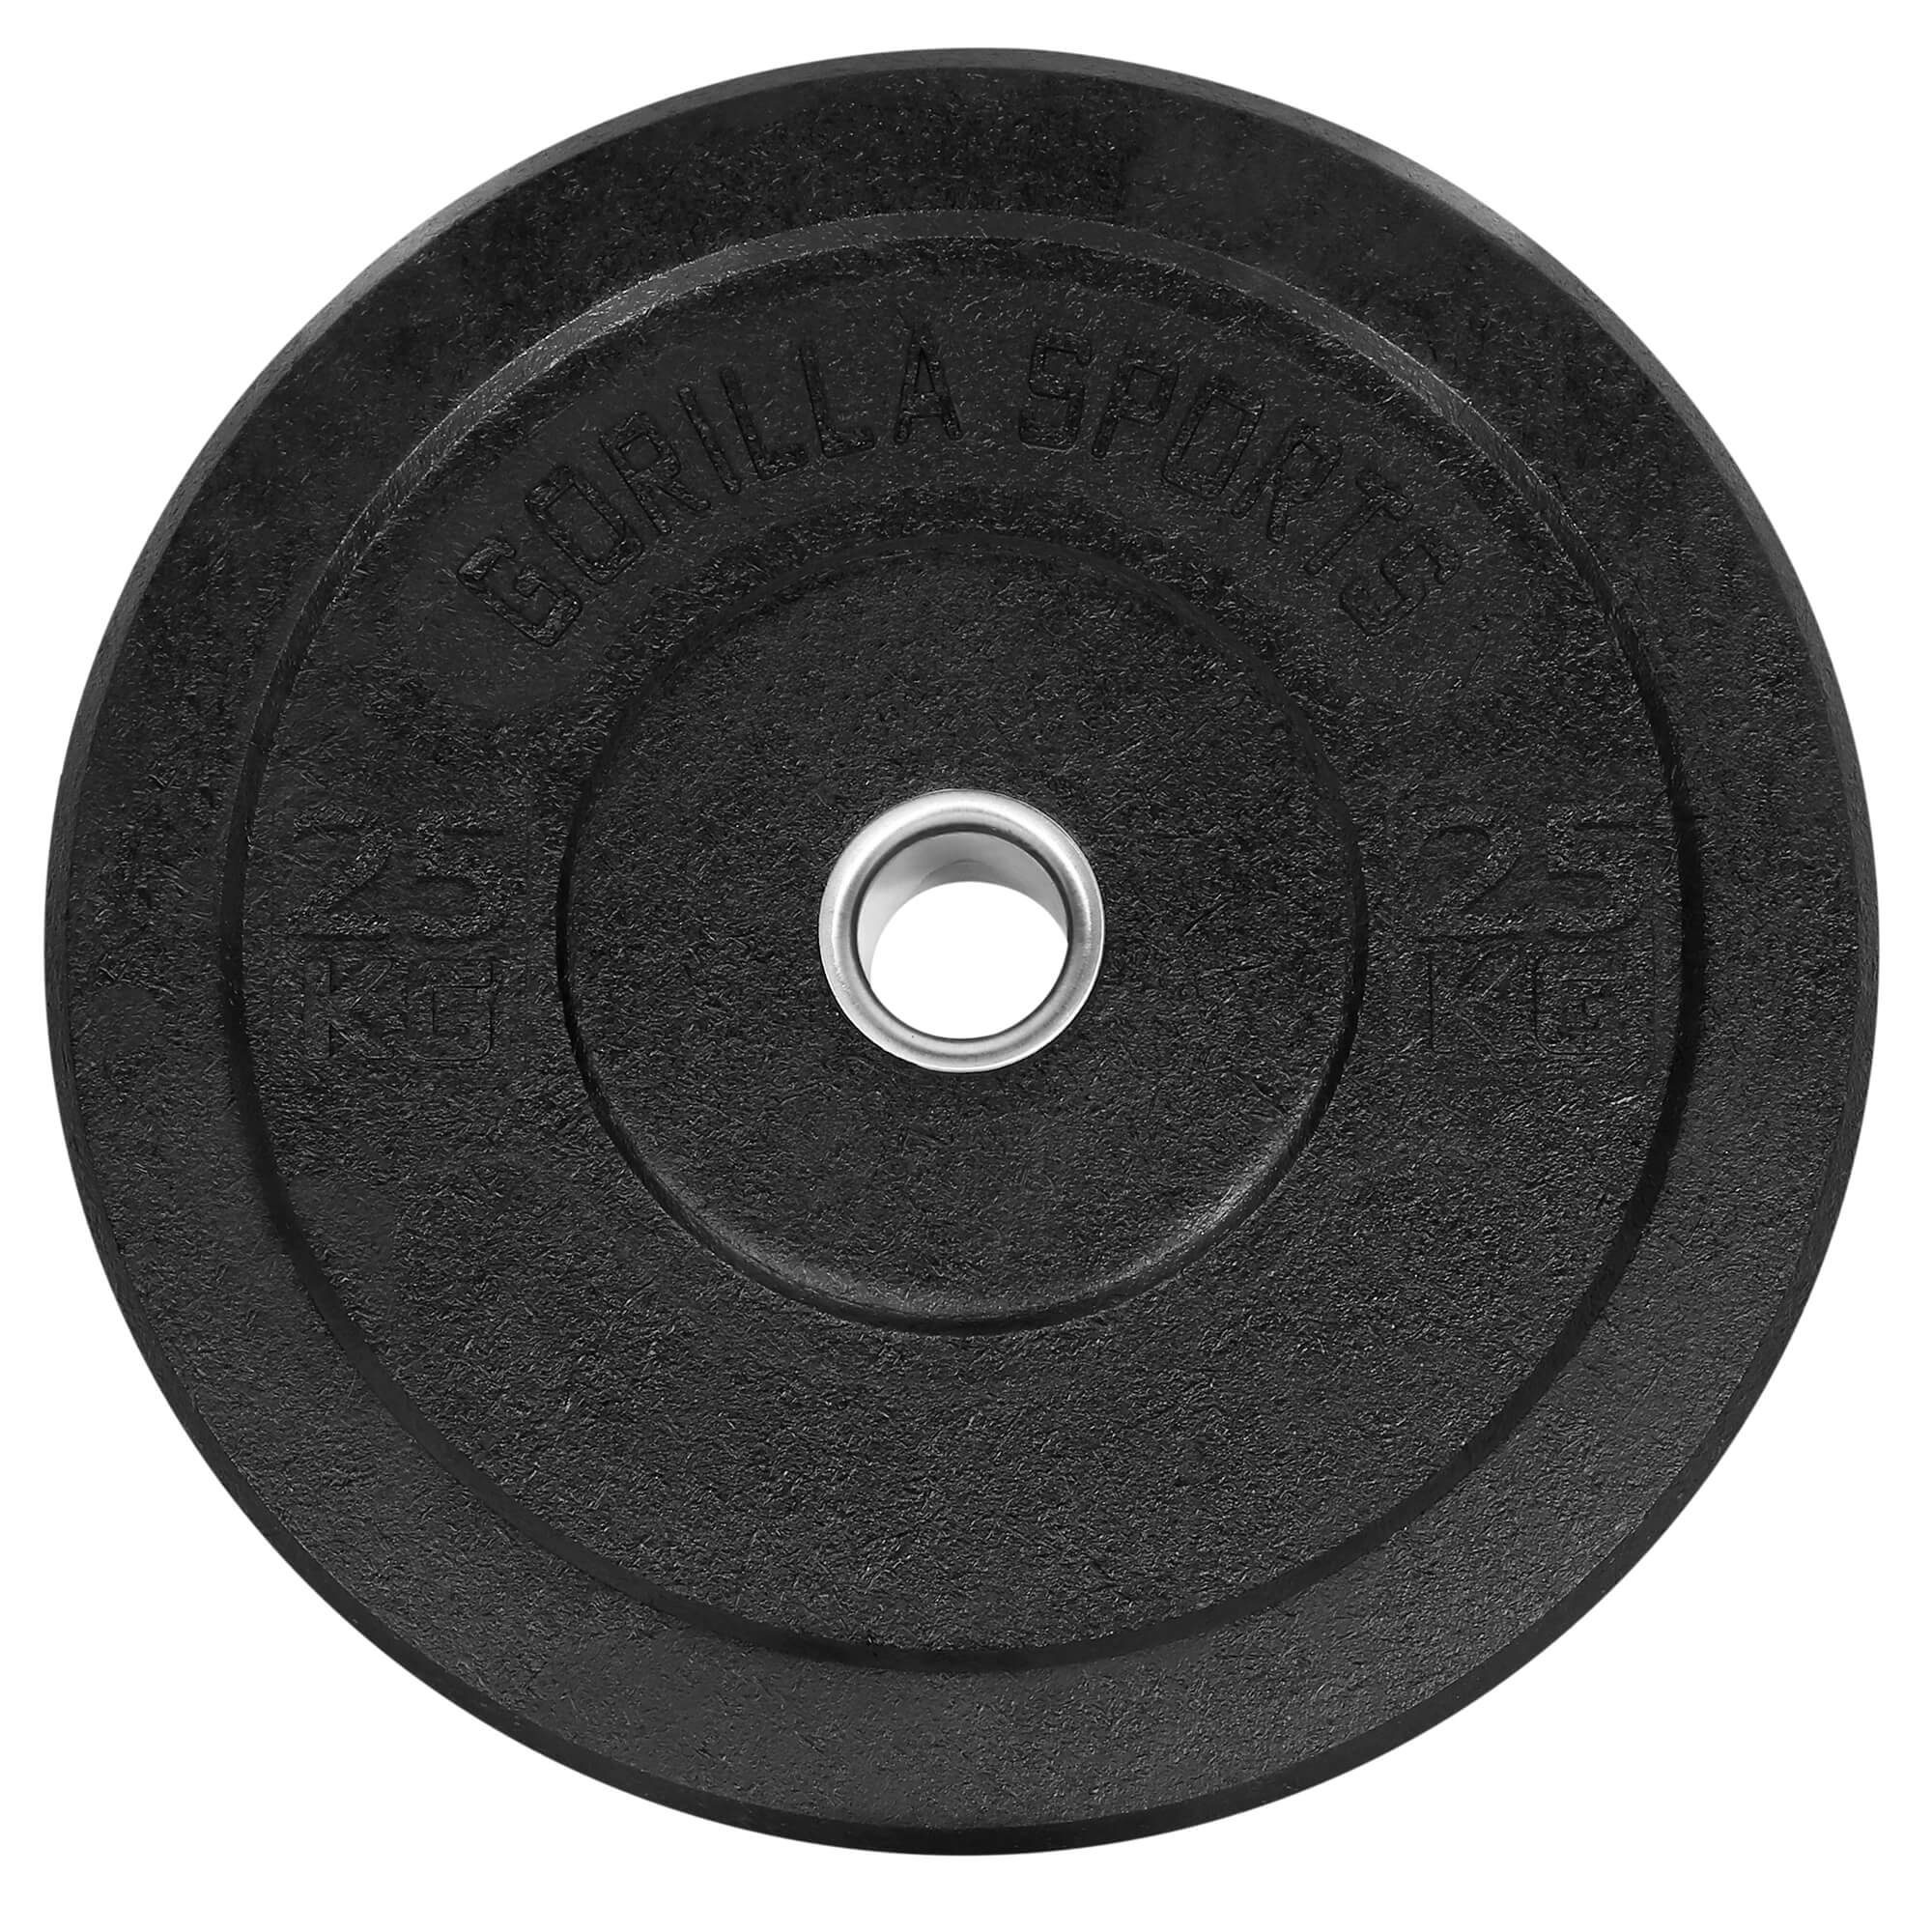 GORILLA SPORTS Hantelscheiben Olympia,5-50kg Gewichte,Einzeln/Set,Bumper Plates,Gewichtsscheiben 25kg